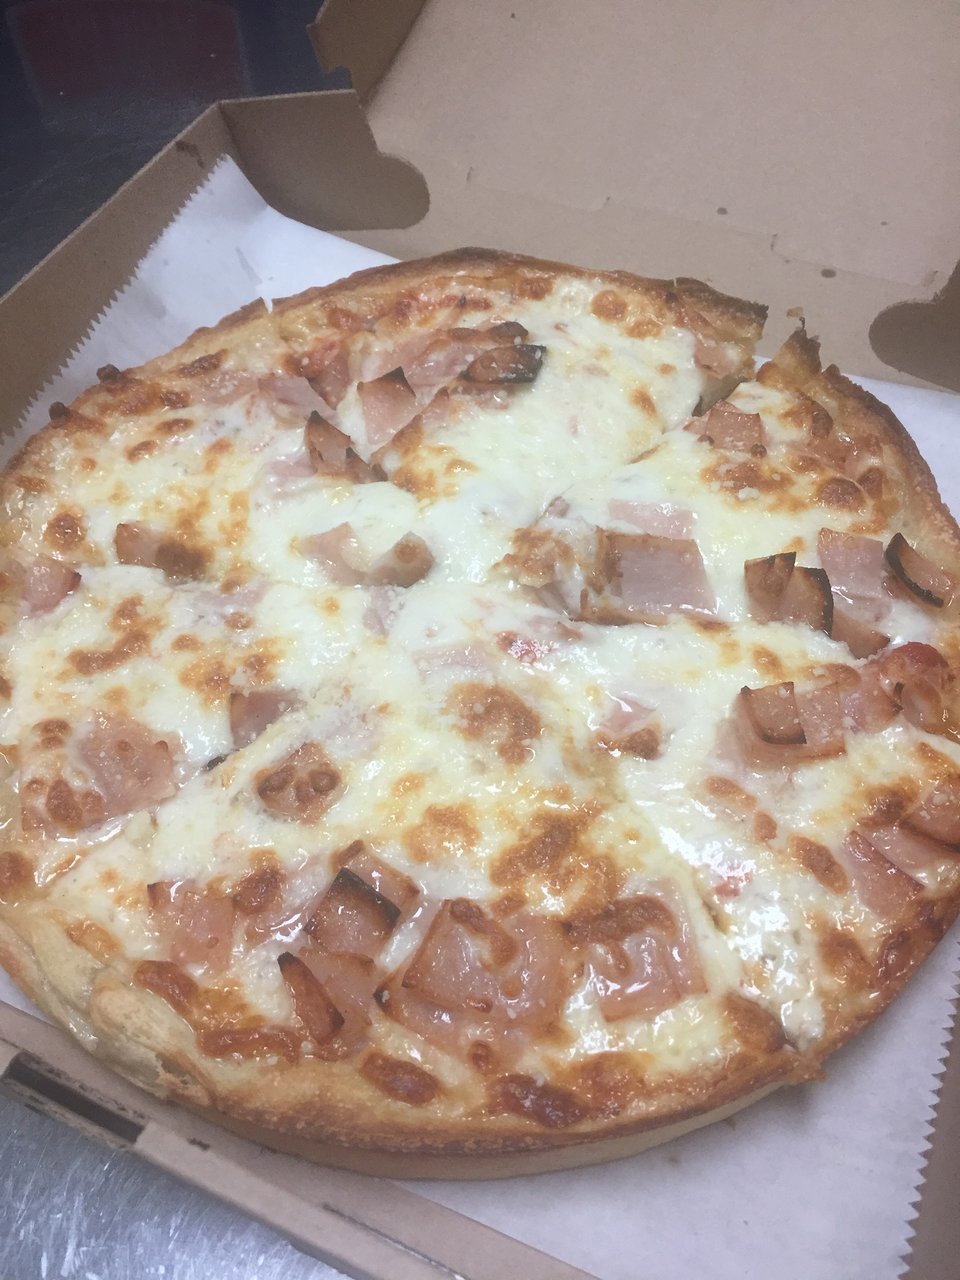 Atden’s Pizza